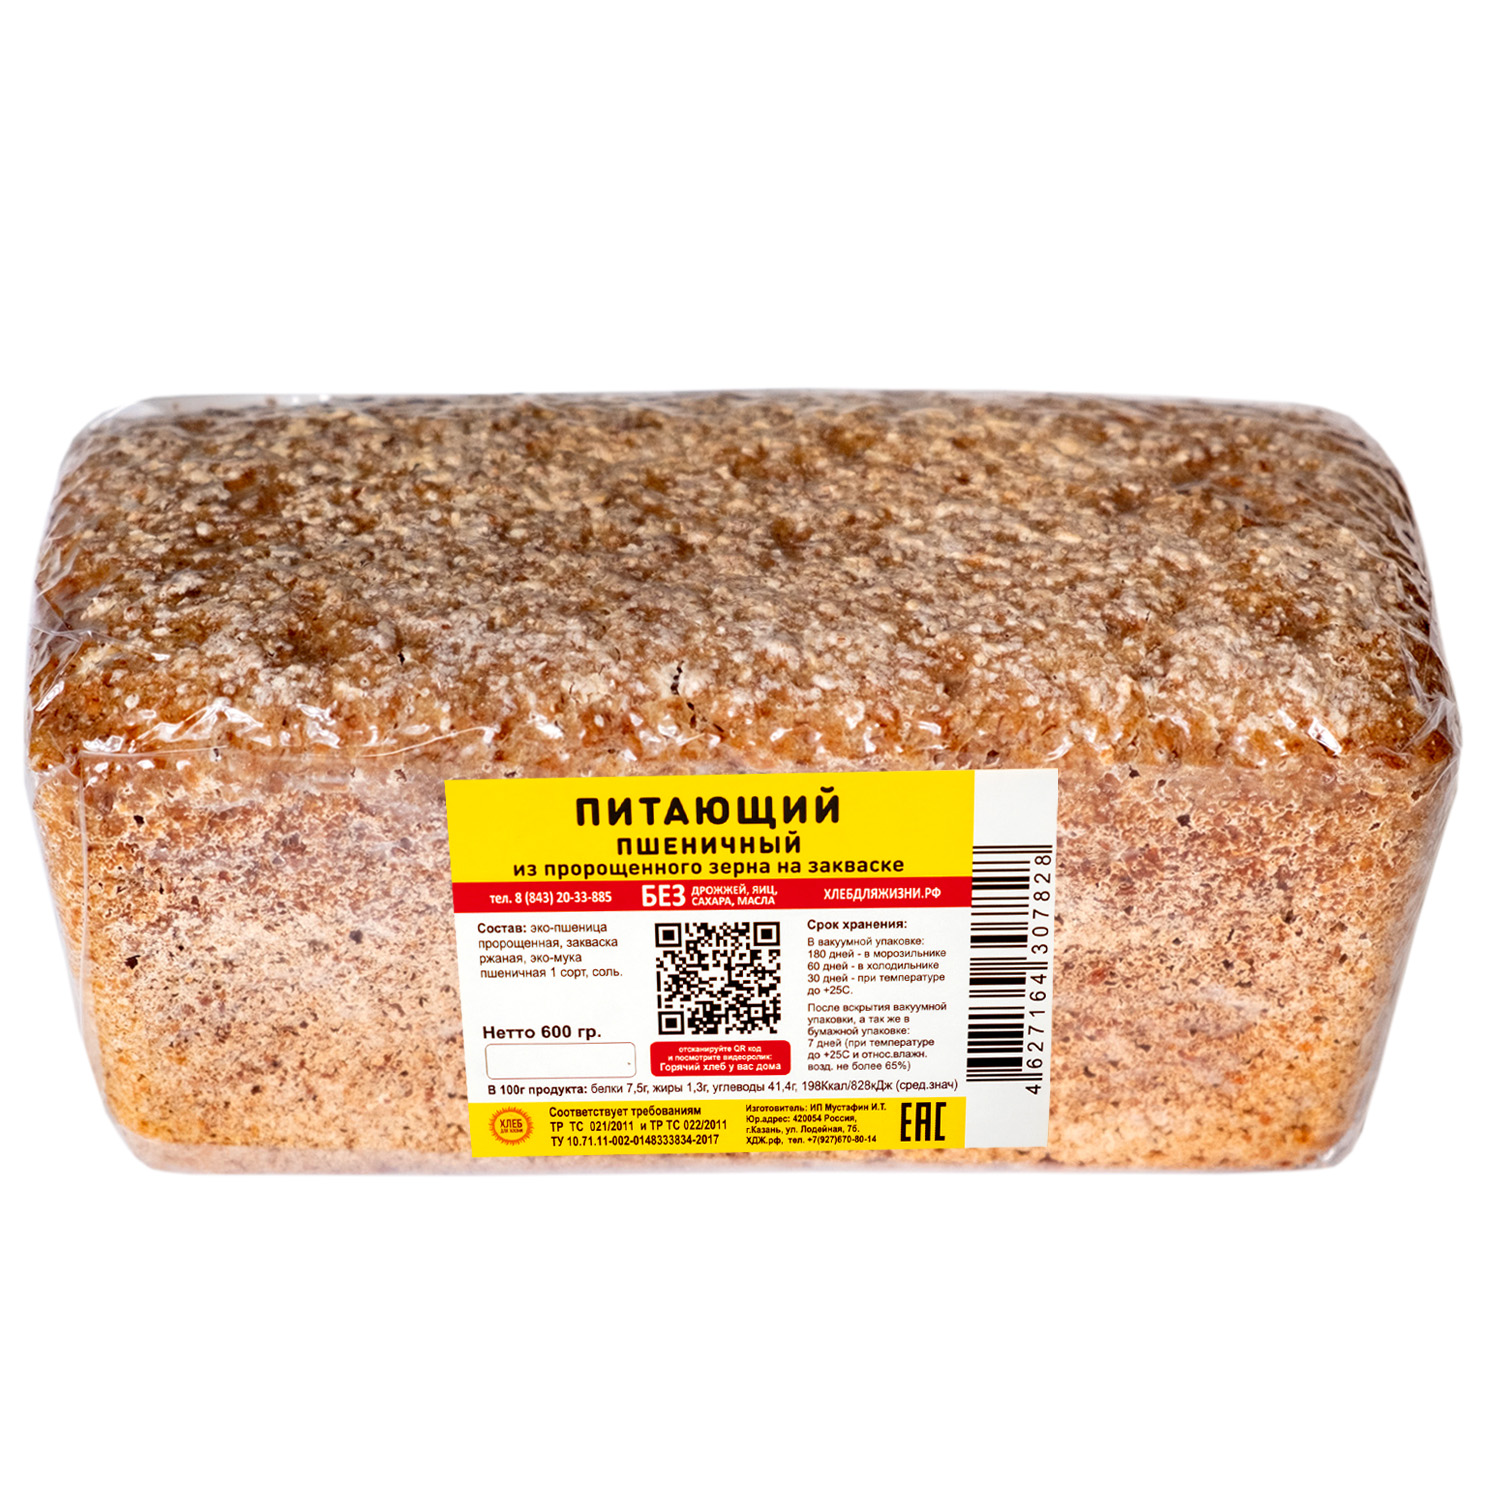 Хлеб для Жизни пшеничный питающий, цельнозерновой, бездрожжевой, на закваске, 600 г